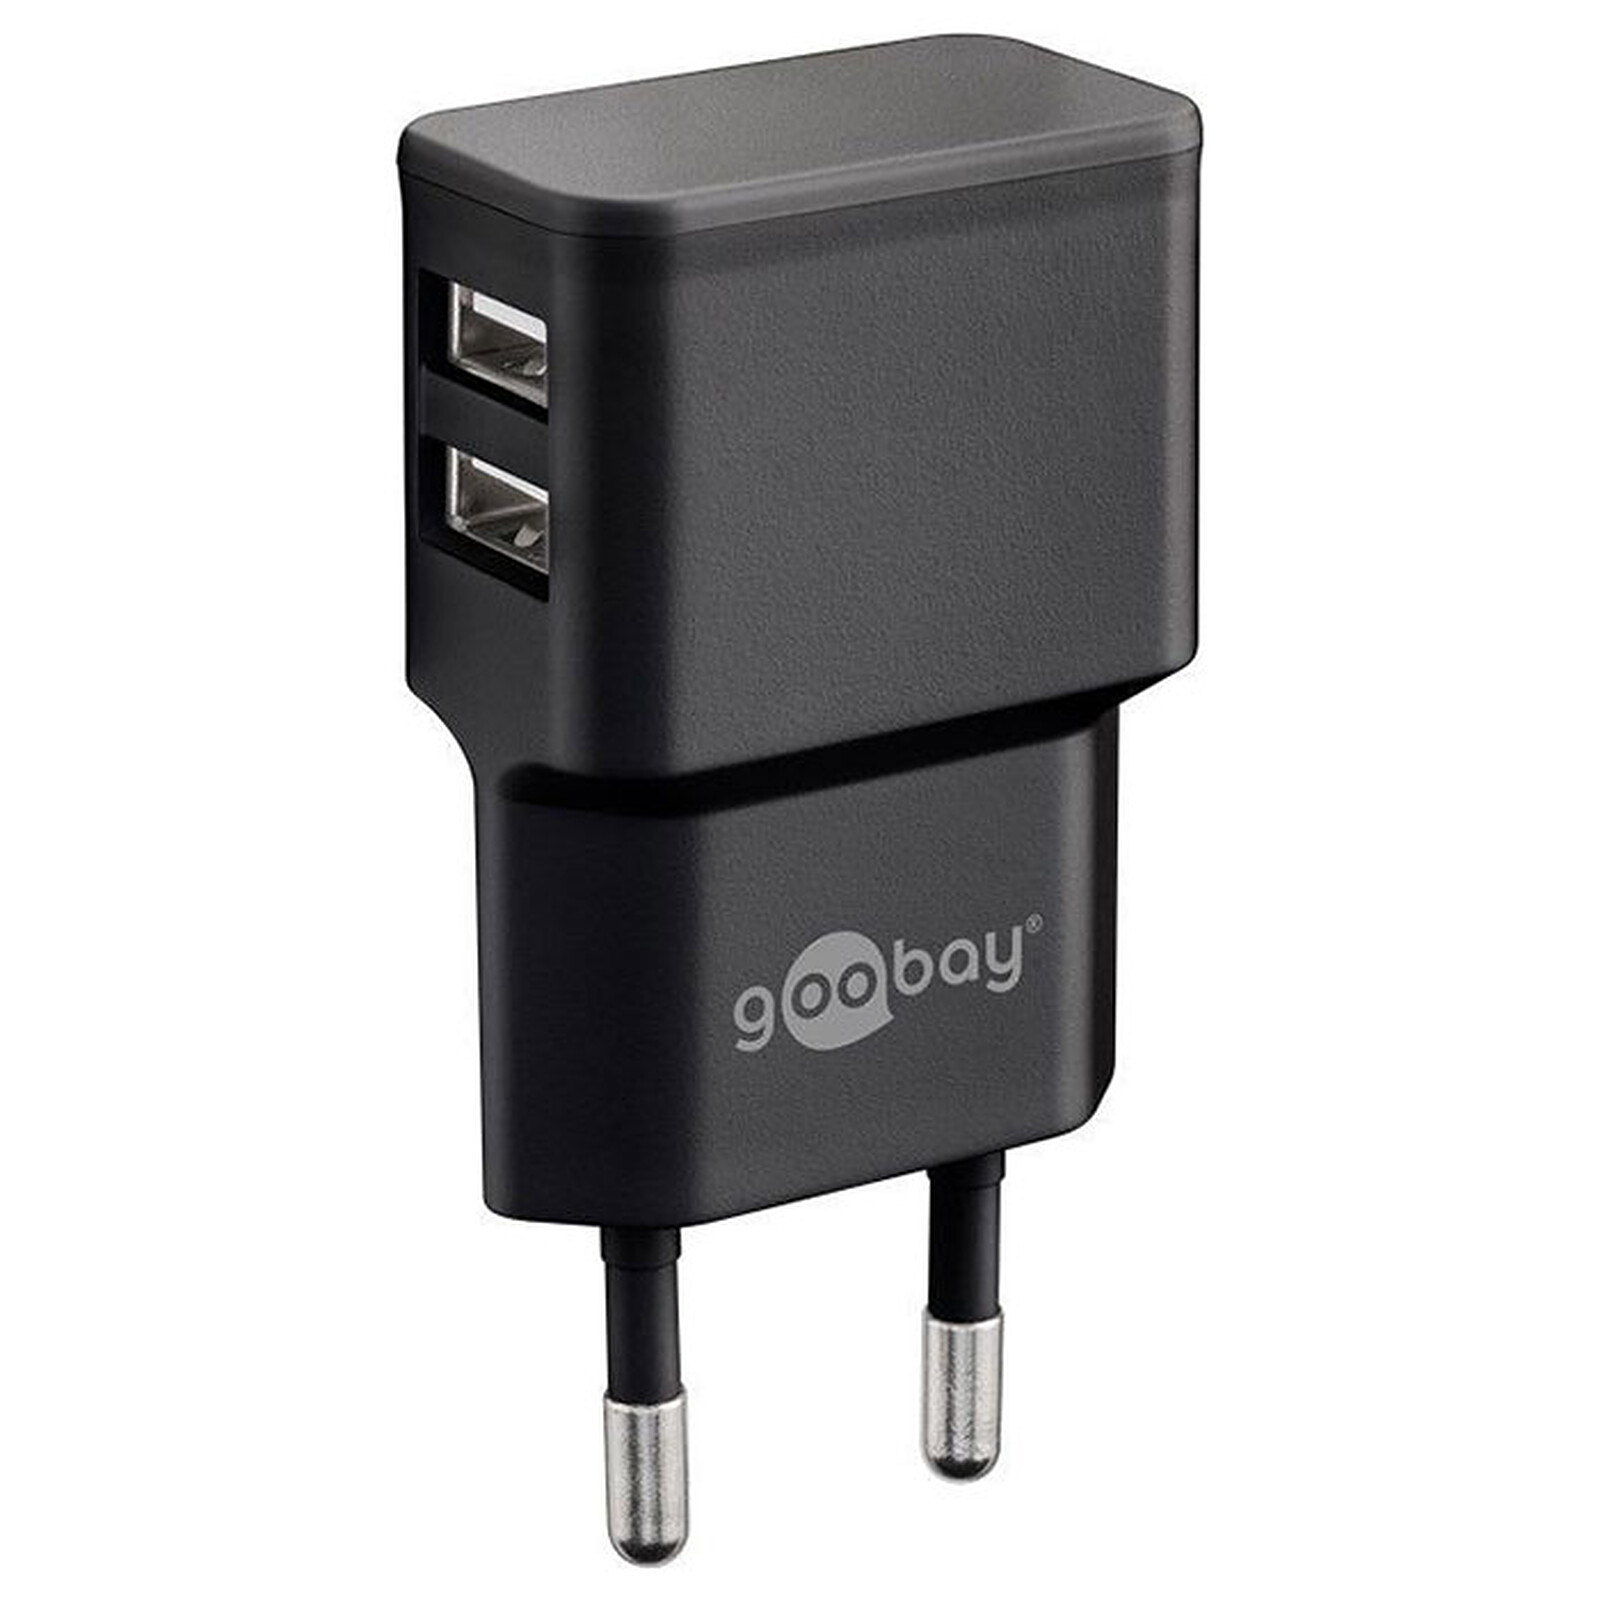 Goobay Chargeur USB Double 2.4A Noir - Chargeur téléphone - Garantie 3 ans  LDLC